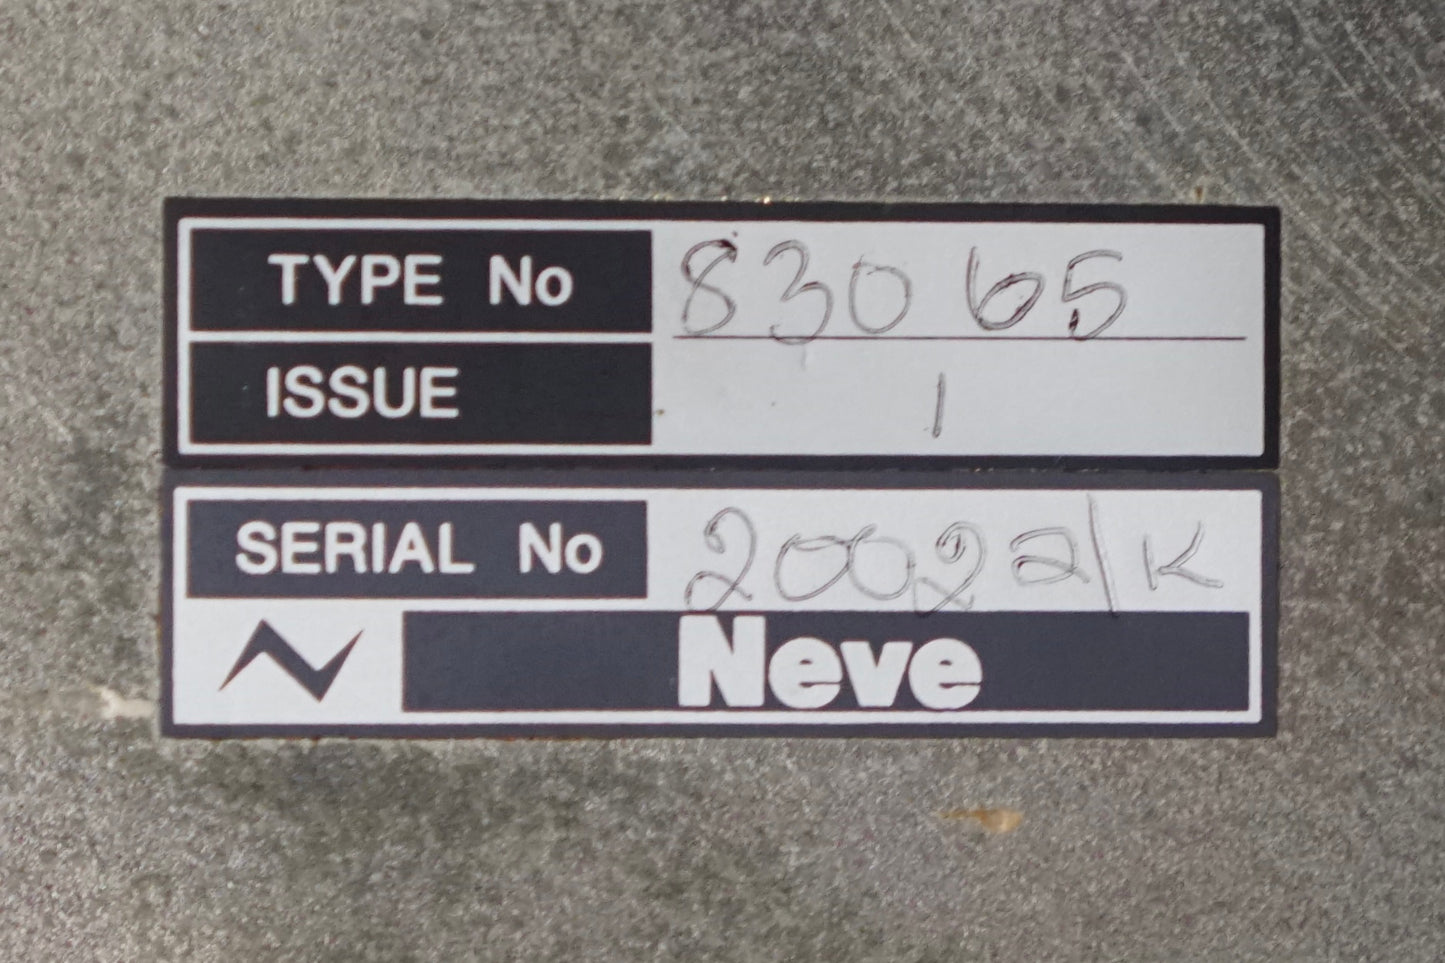 Neve 83065 Stereo Compressor